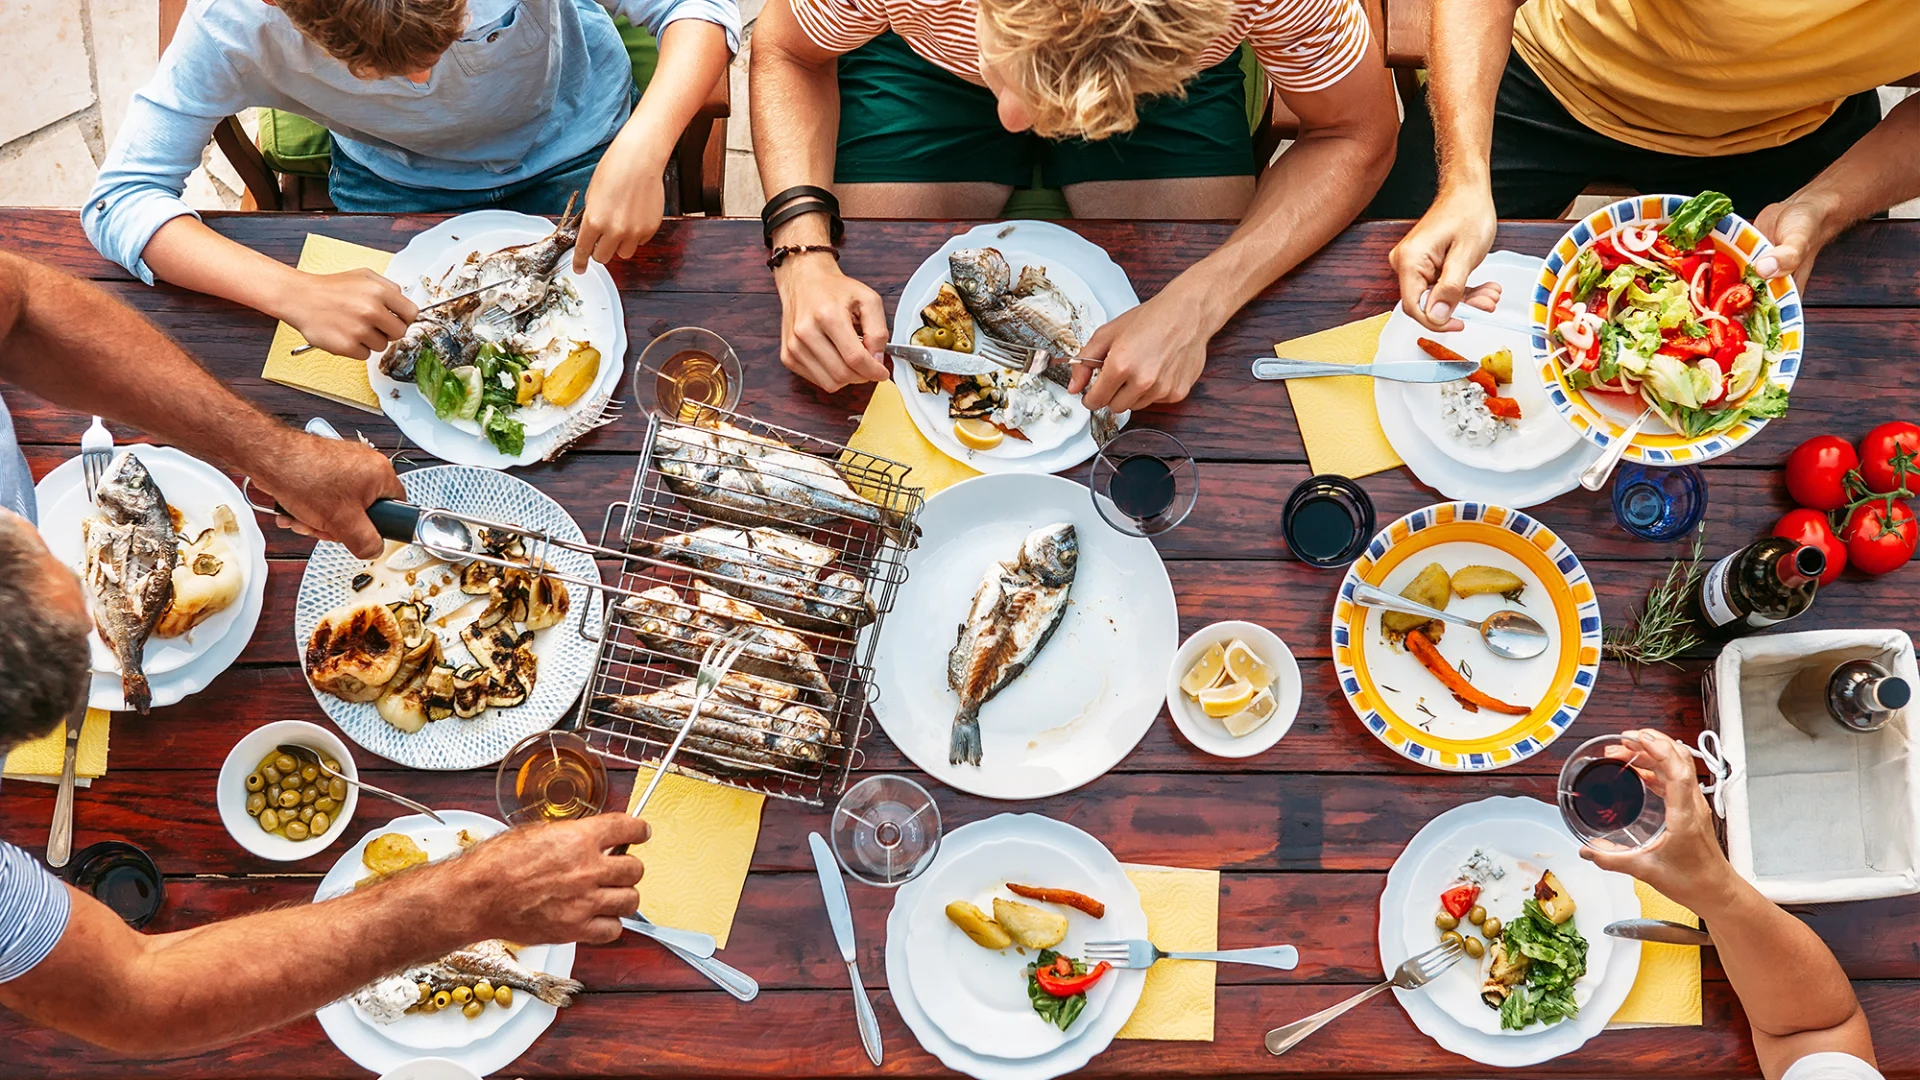 Cinque persone sedute a un tavolo si gustano delle pietanze cotte alla griglia.